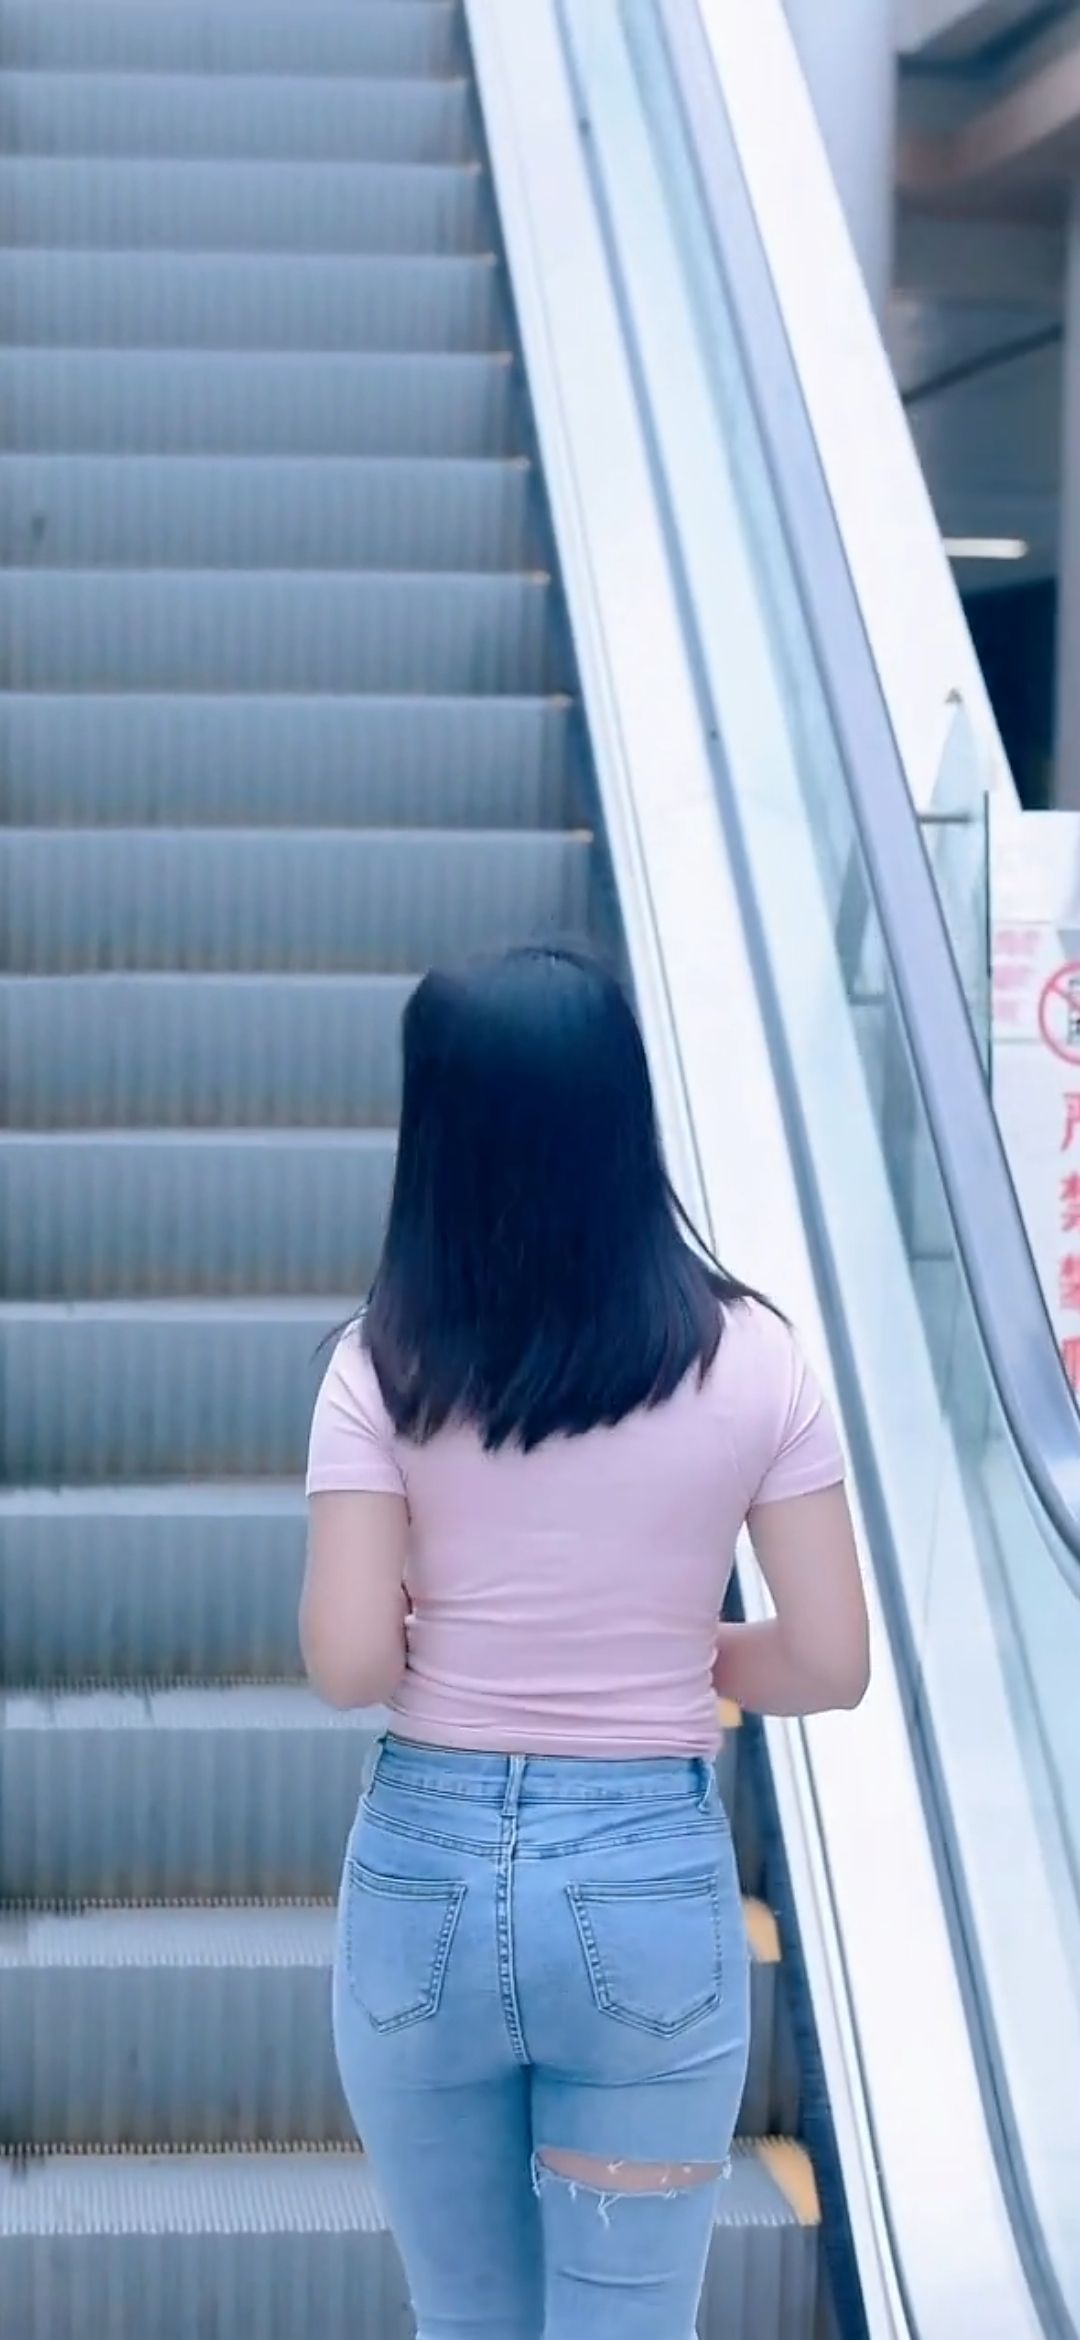 [视频]从地铁回到地面走楼梯的牛仔裤美女